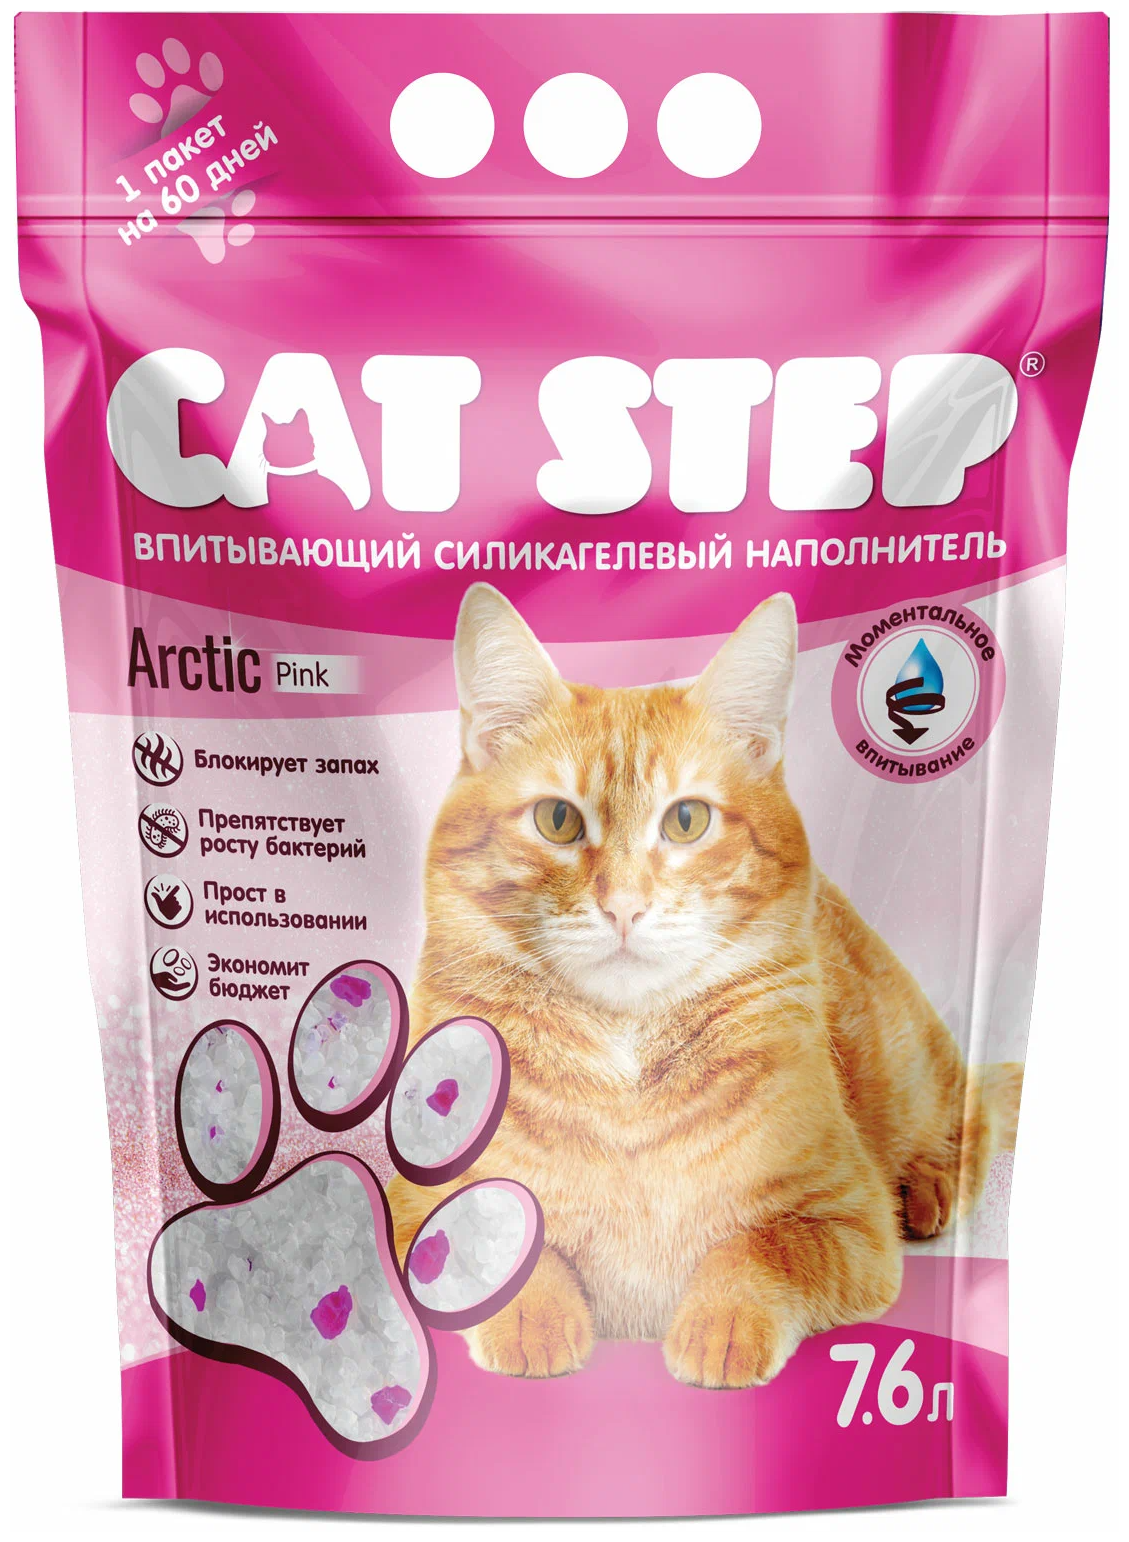 Наполнитель для кошачьих туалетов Cat Step Arctic Pink впитывающий силикагелевый 7,6 л